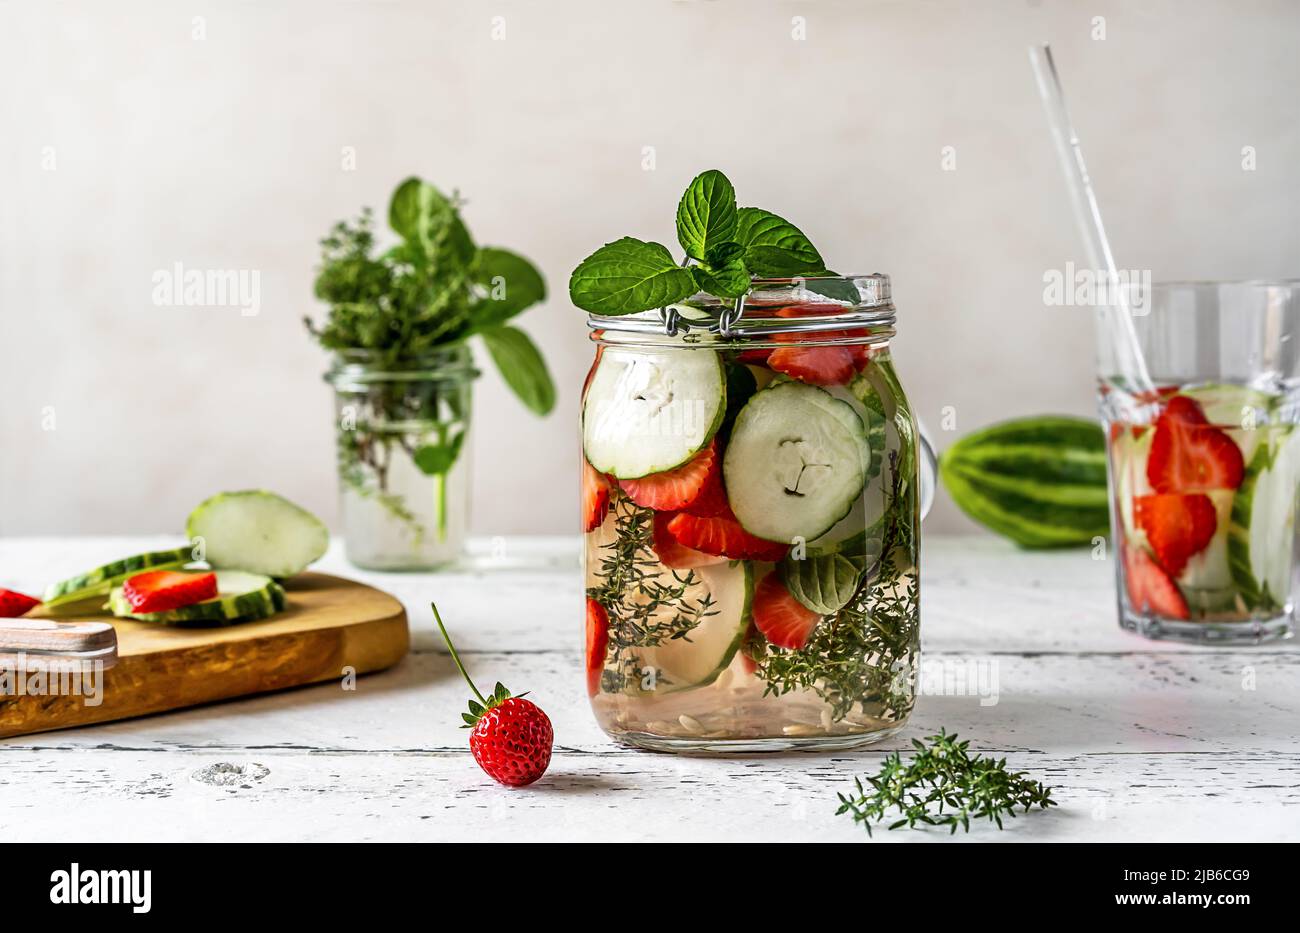 Wasser in Glasgefäß mit Zutaten - Erdbeere, Meloncella, die Hybrid aus Gurke und Melone, Thymian, Minze ist. Stockfoto